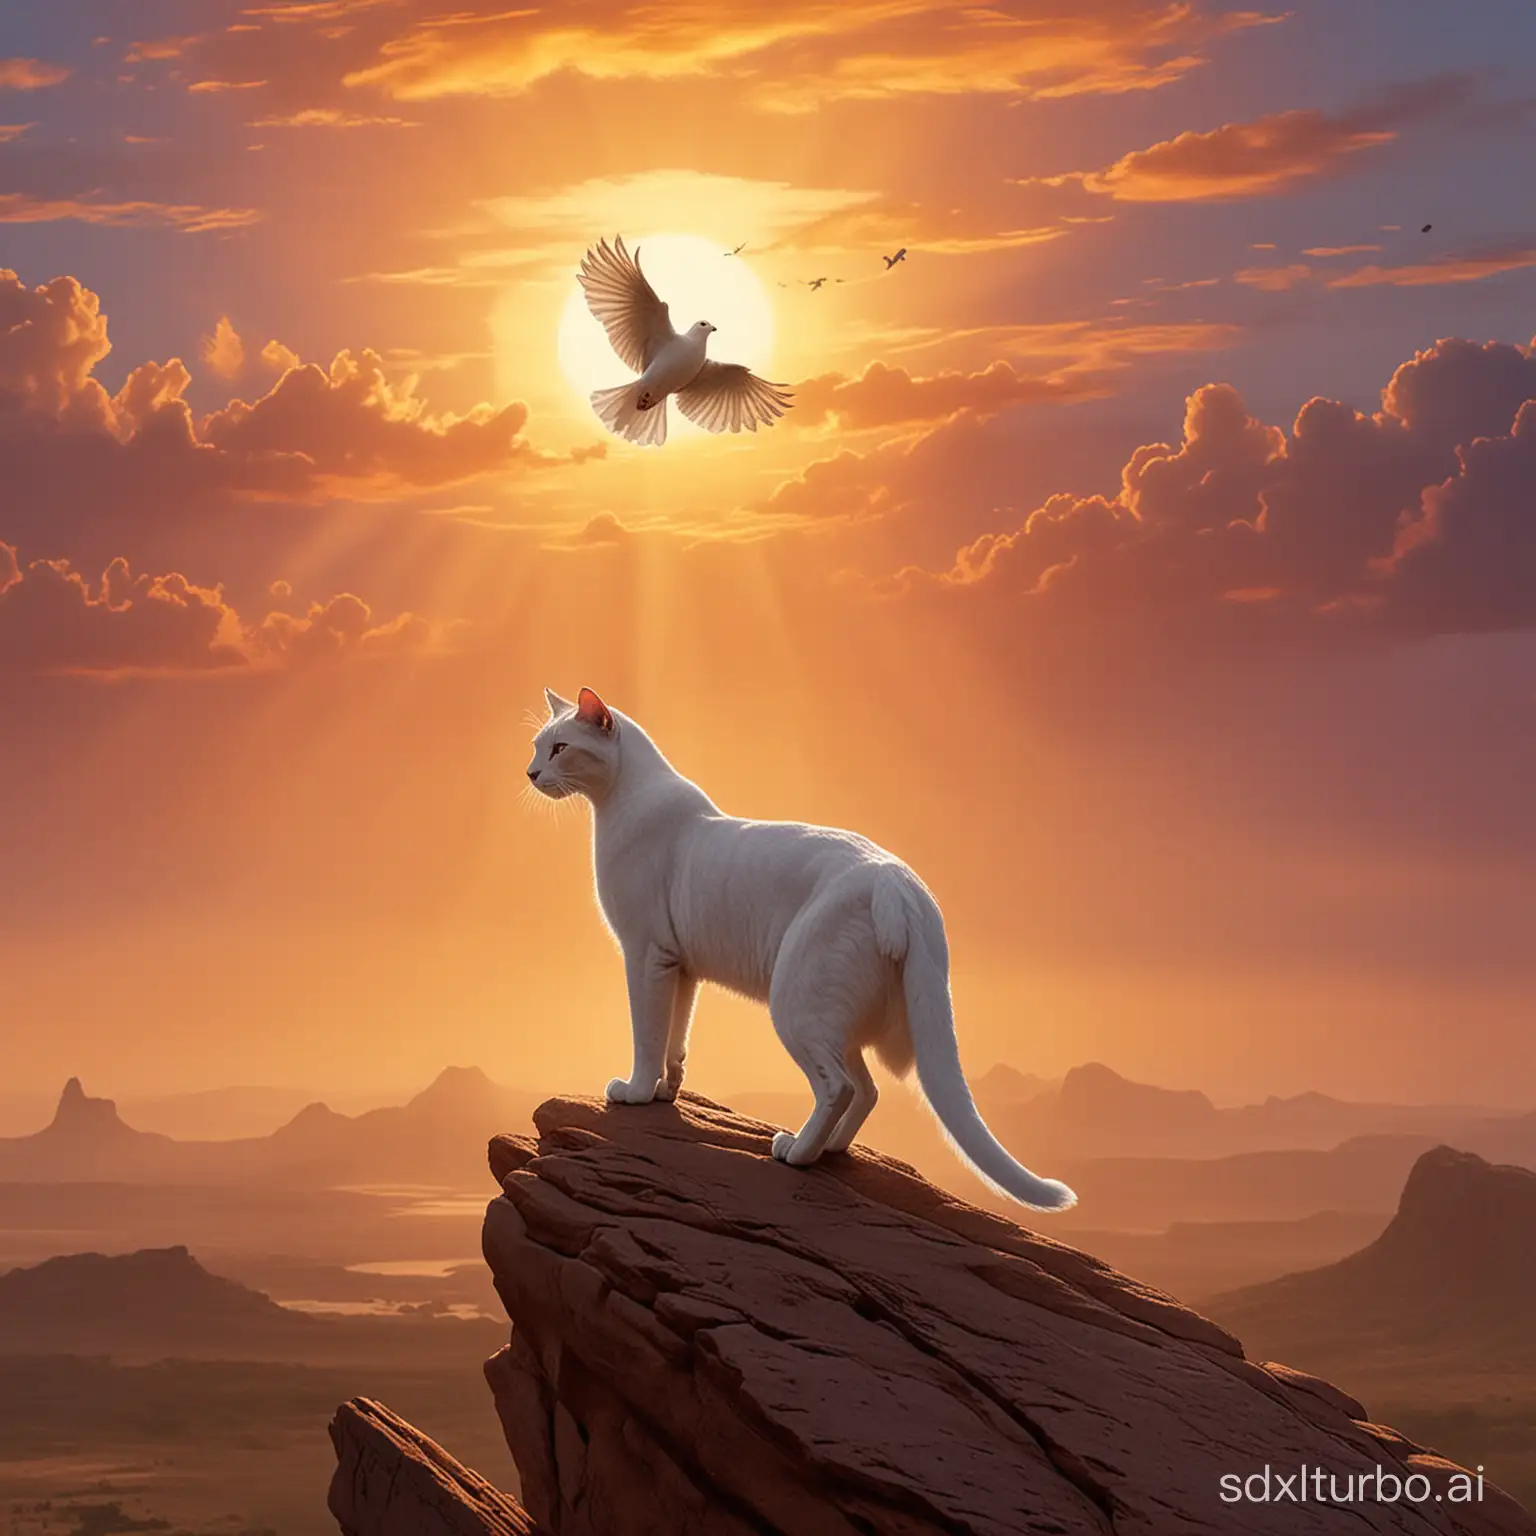 crea una paloma encima de un gato árabe en la roca del rey león
